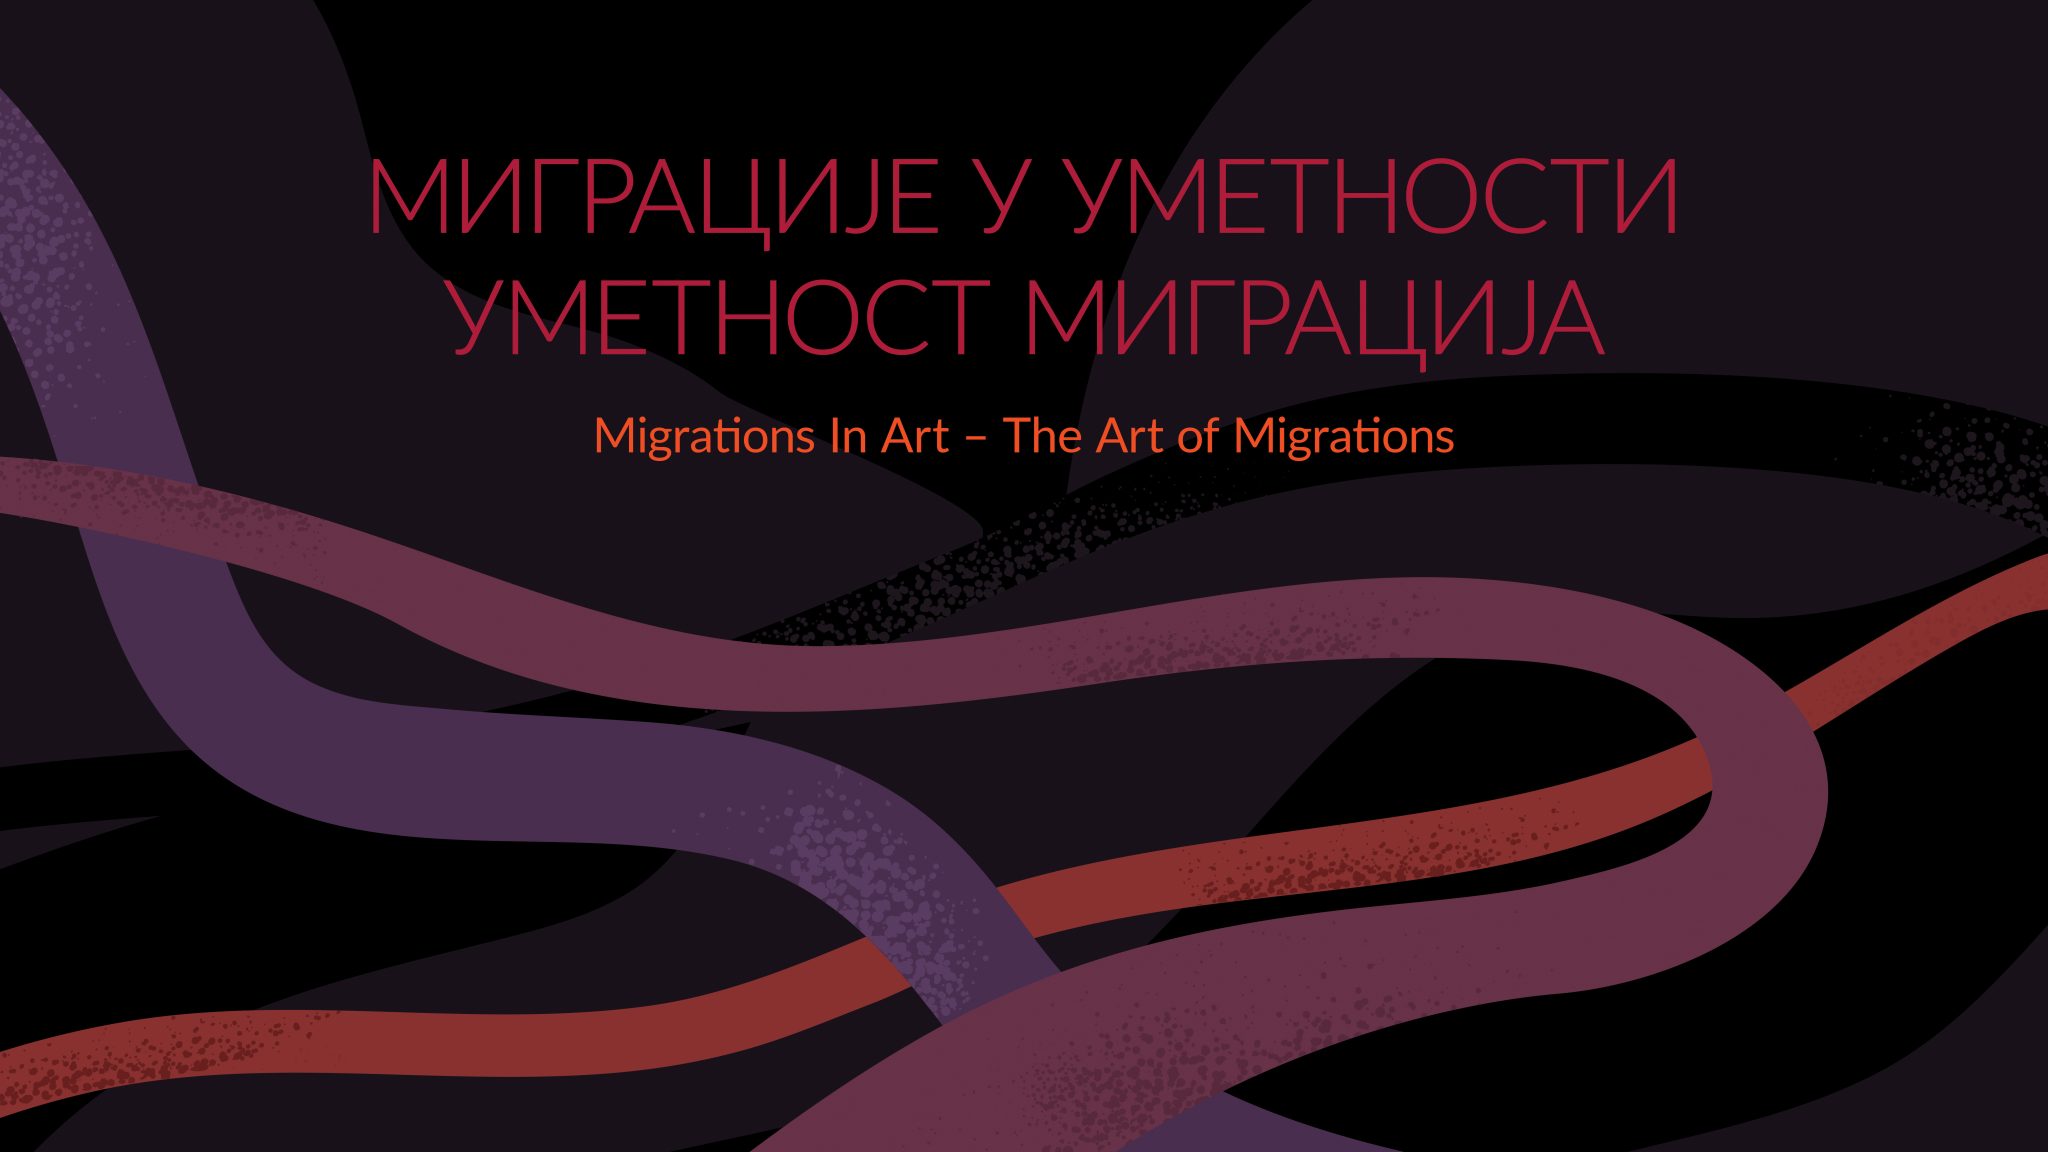 Изложба ,,Миграције у уметности – Уметност миграција” отворена је данас у Галерији Матице српске и трајаће до 30. априла 2022. године